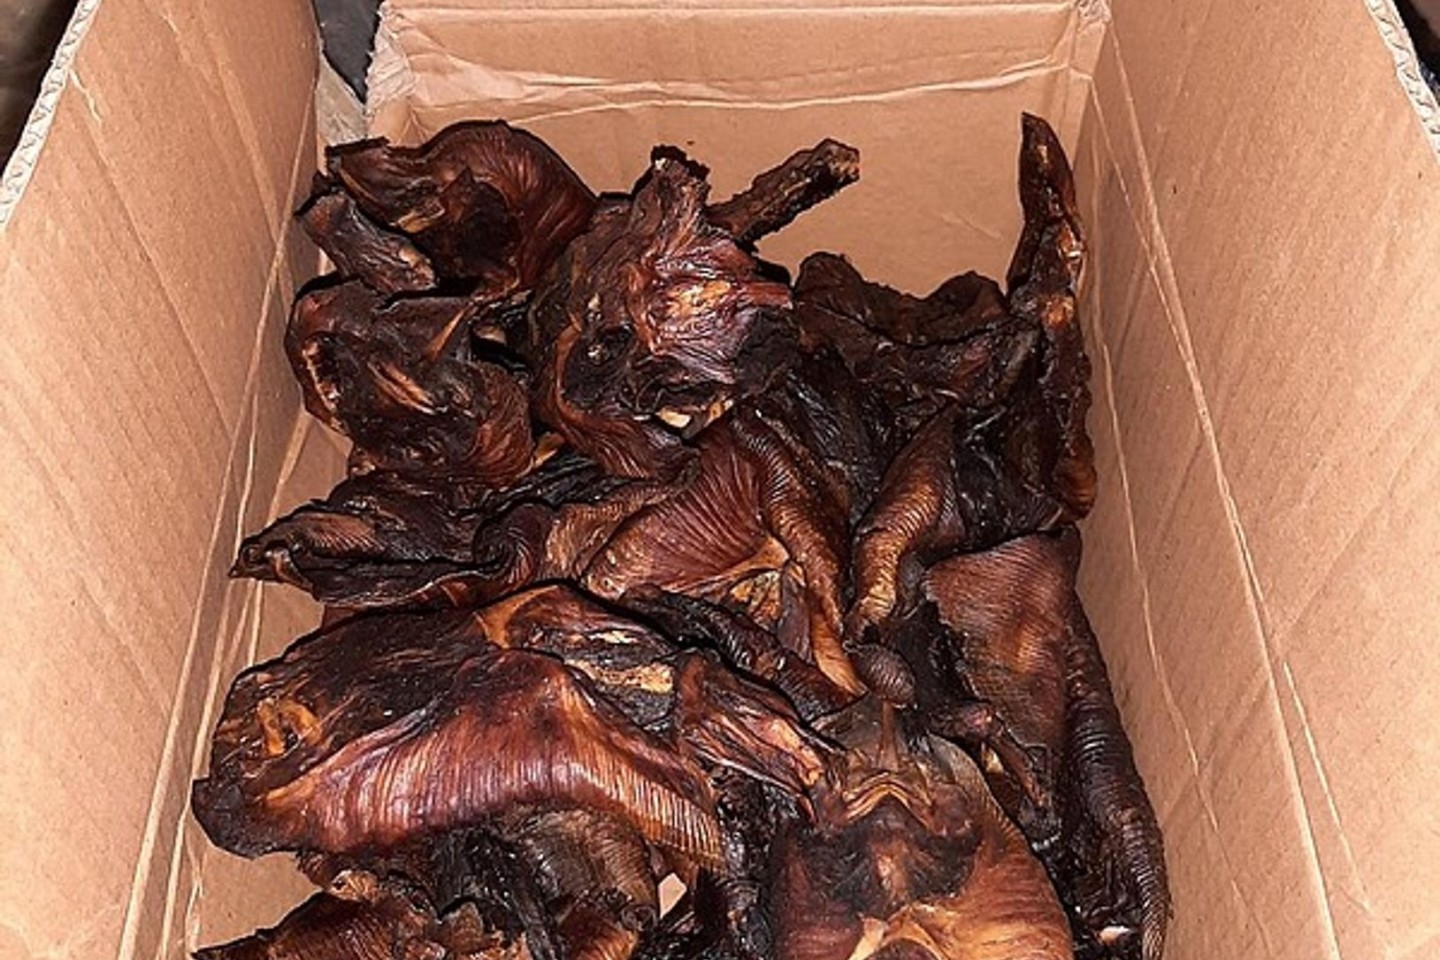 Gebratene Fledermäuse, die von der Bundespolizei Aachen beschlagnahmt wurden.